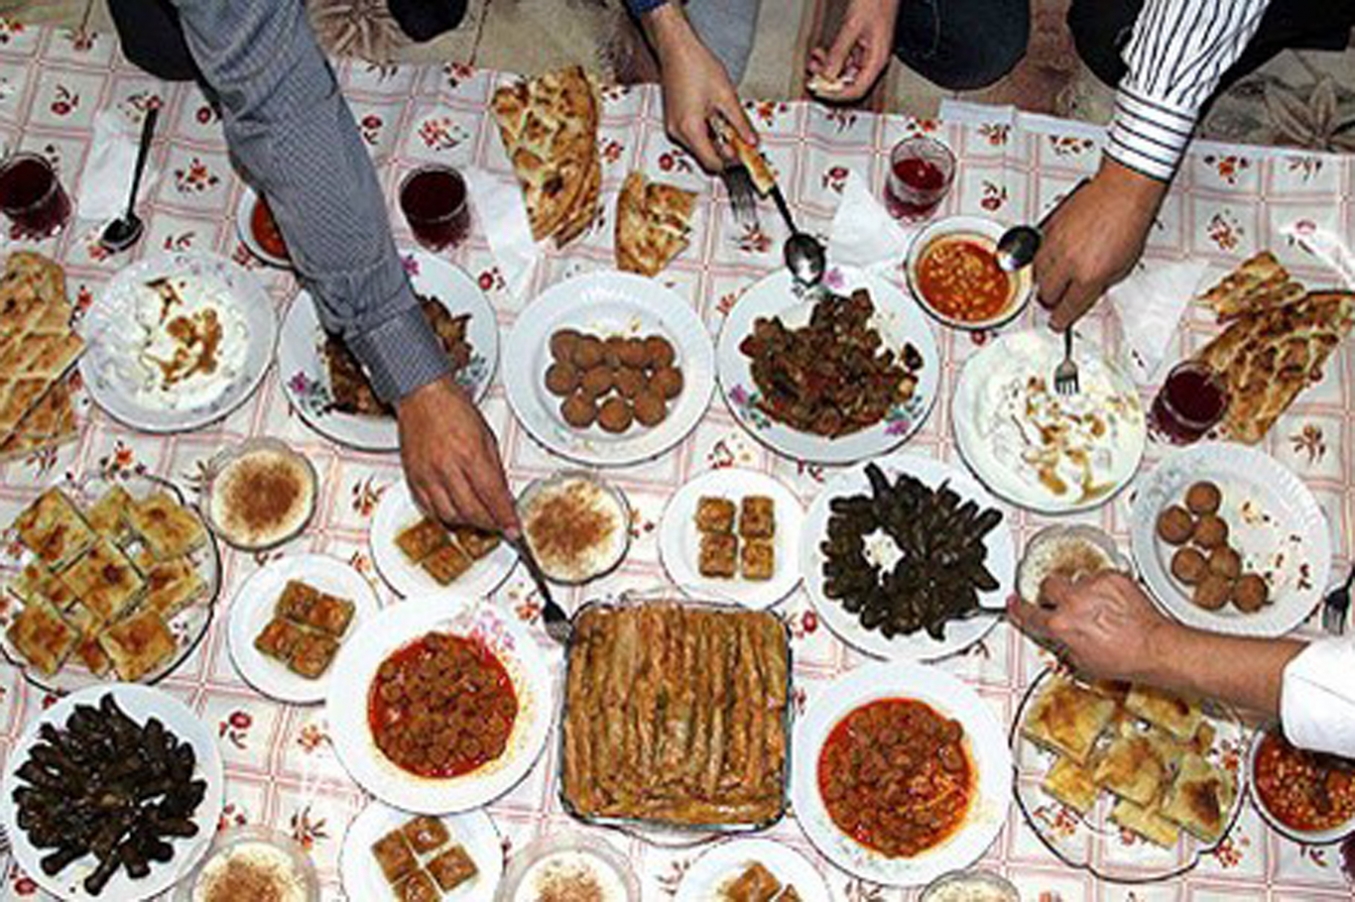 Ramazan Bayramı’nda sağlıklı beslenme önerileri